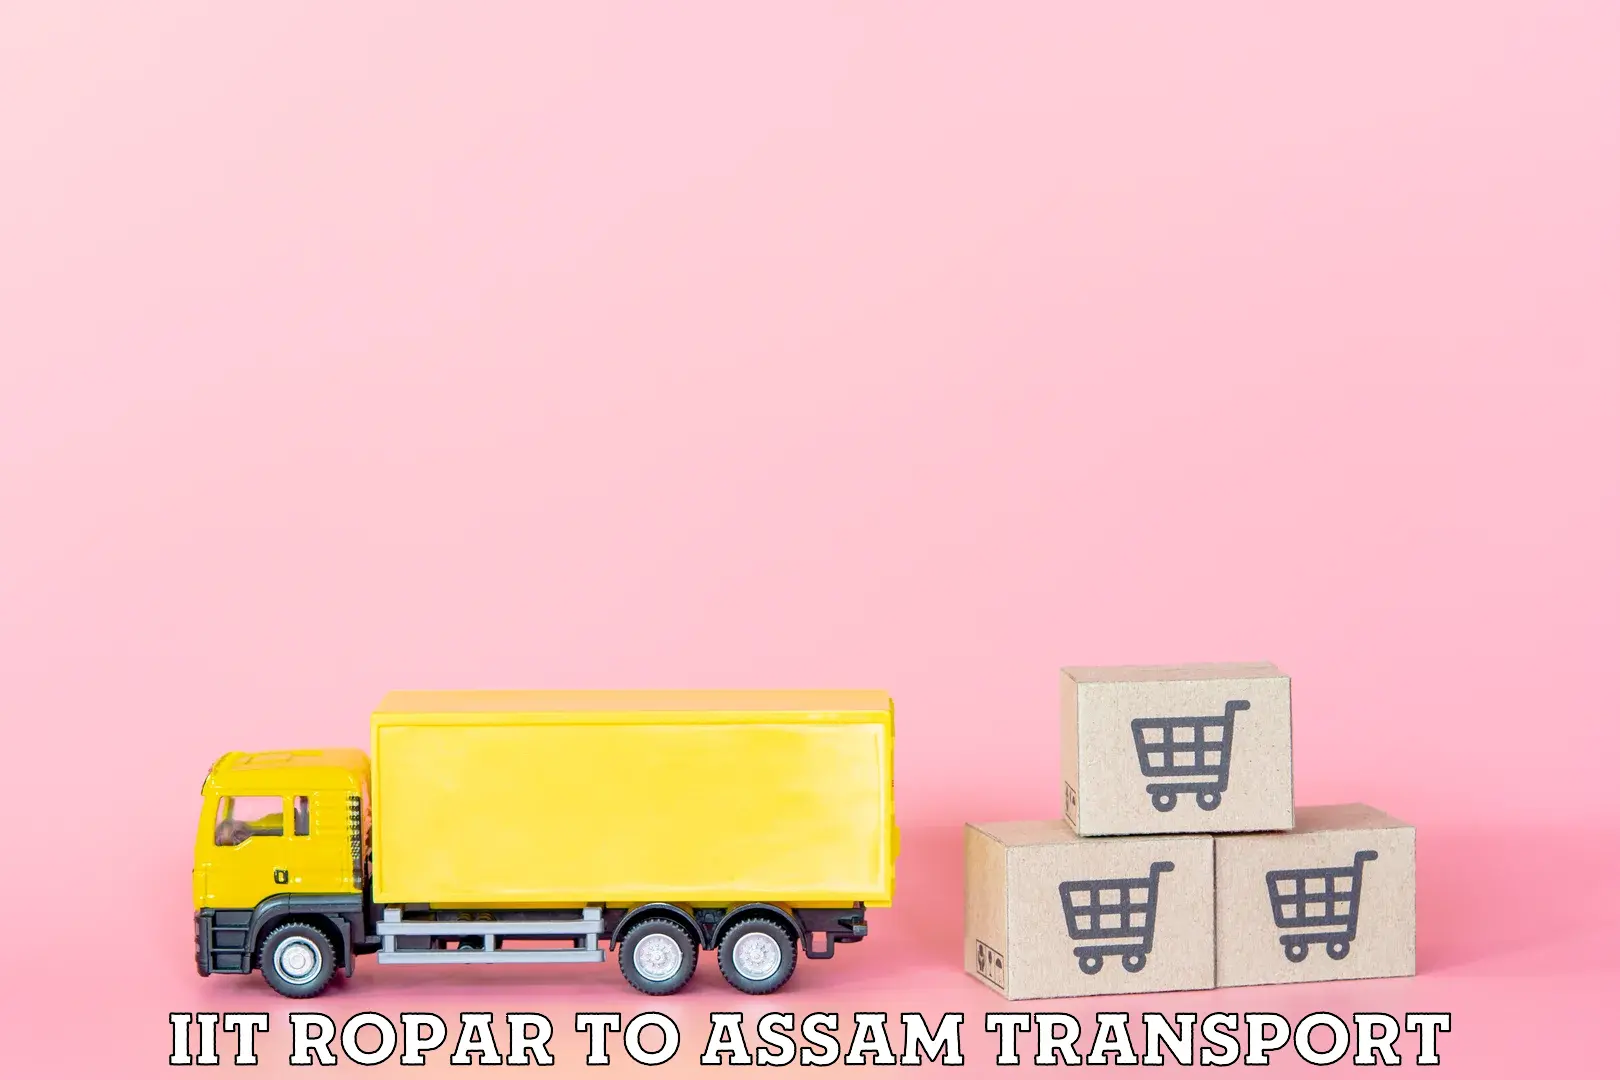 Land transport services IIT Ropar to Kokrajhar